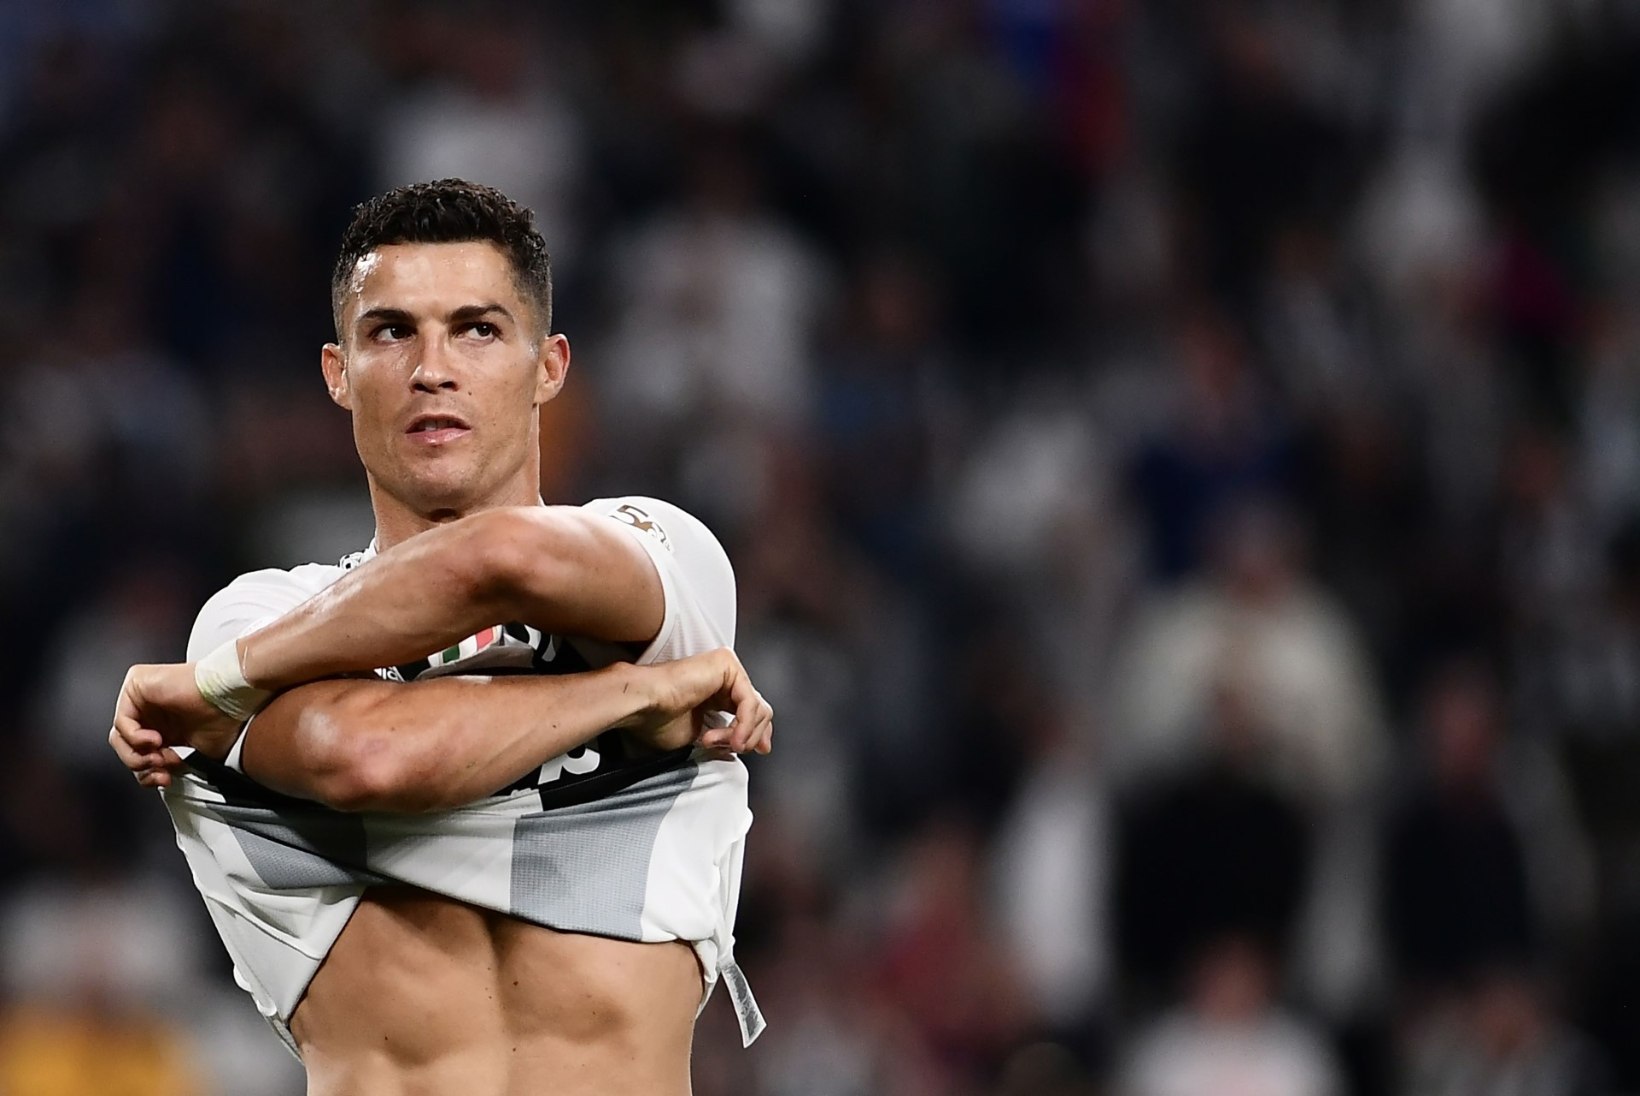 PÄEVAKLÕPS | Vägistamissüüdistusi tõrjuv Ronaldo säras Juventuse treeningutel õnnest